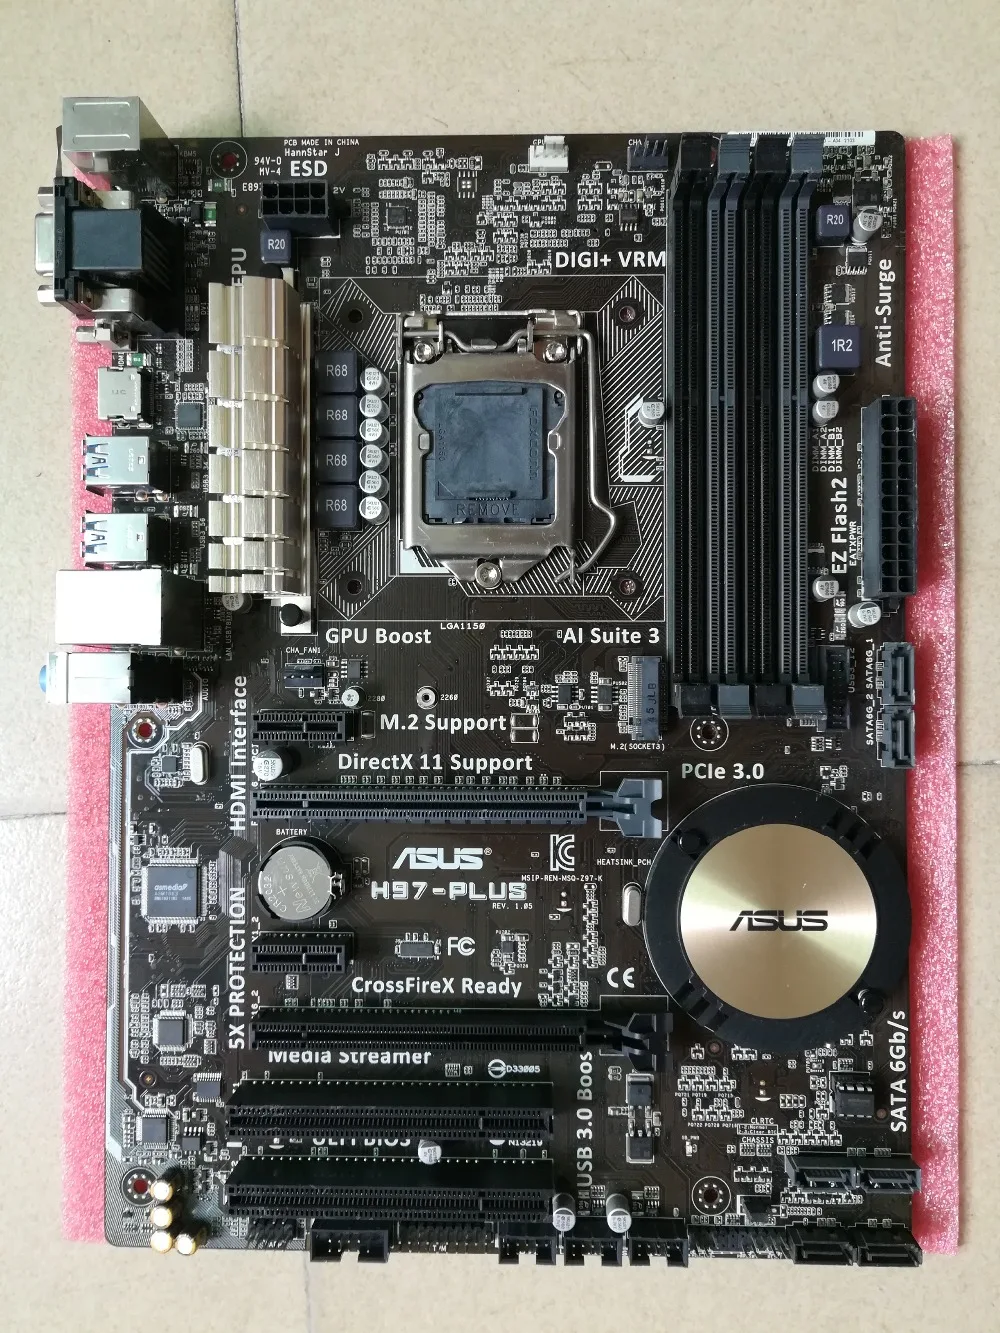 

Socket LGA 1150 For ASUS H97-PLUS Original Used Desktop for Intel H97 Motherboard DDR3 USB3.0 SATA3 PCI-E3.0